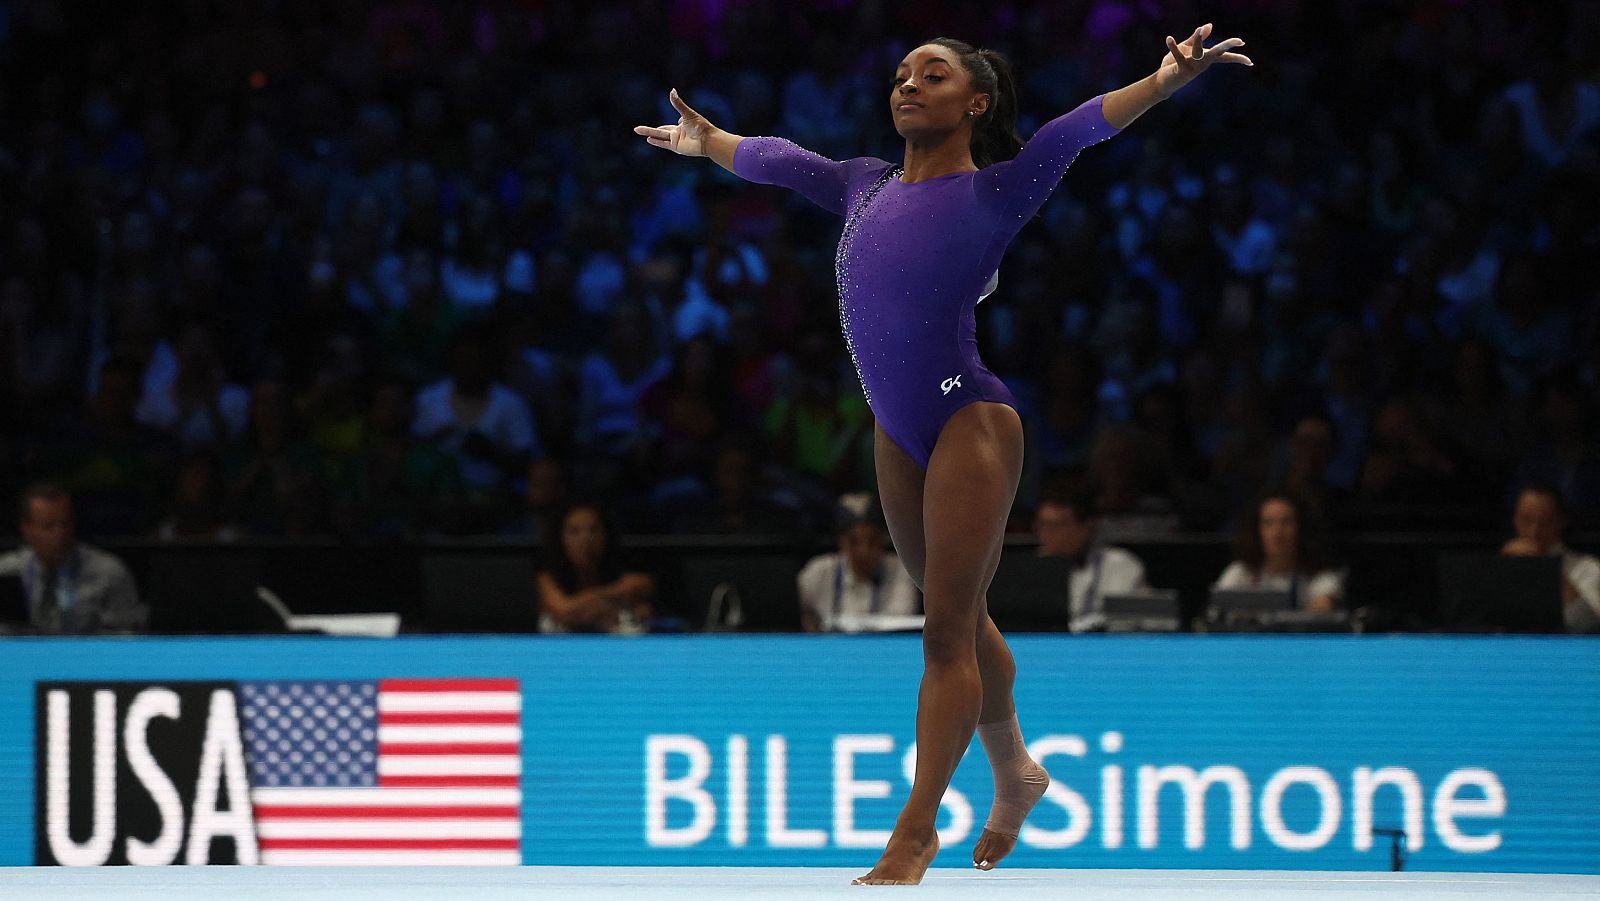 Simone Biles cierra el Mundial de gimnasia con un oro en suelo - ver ahora